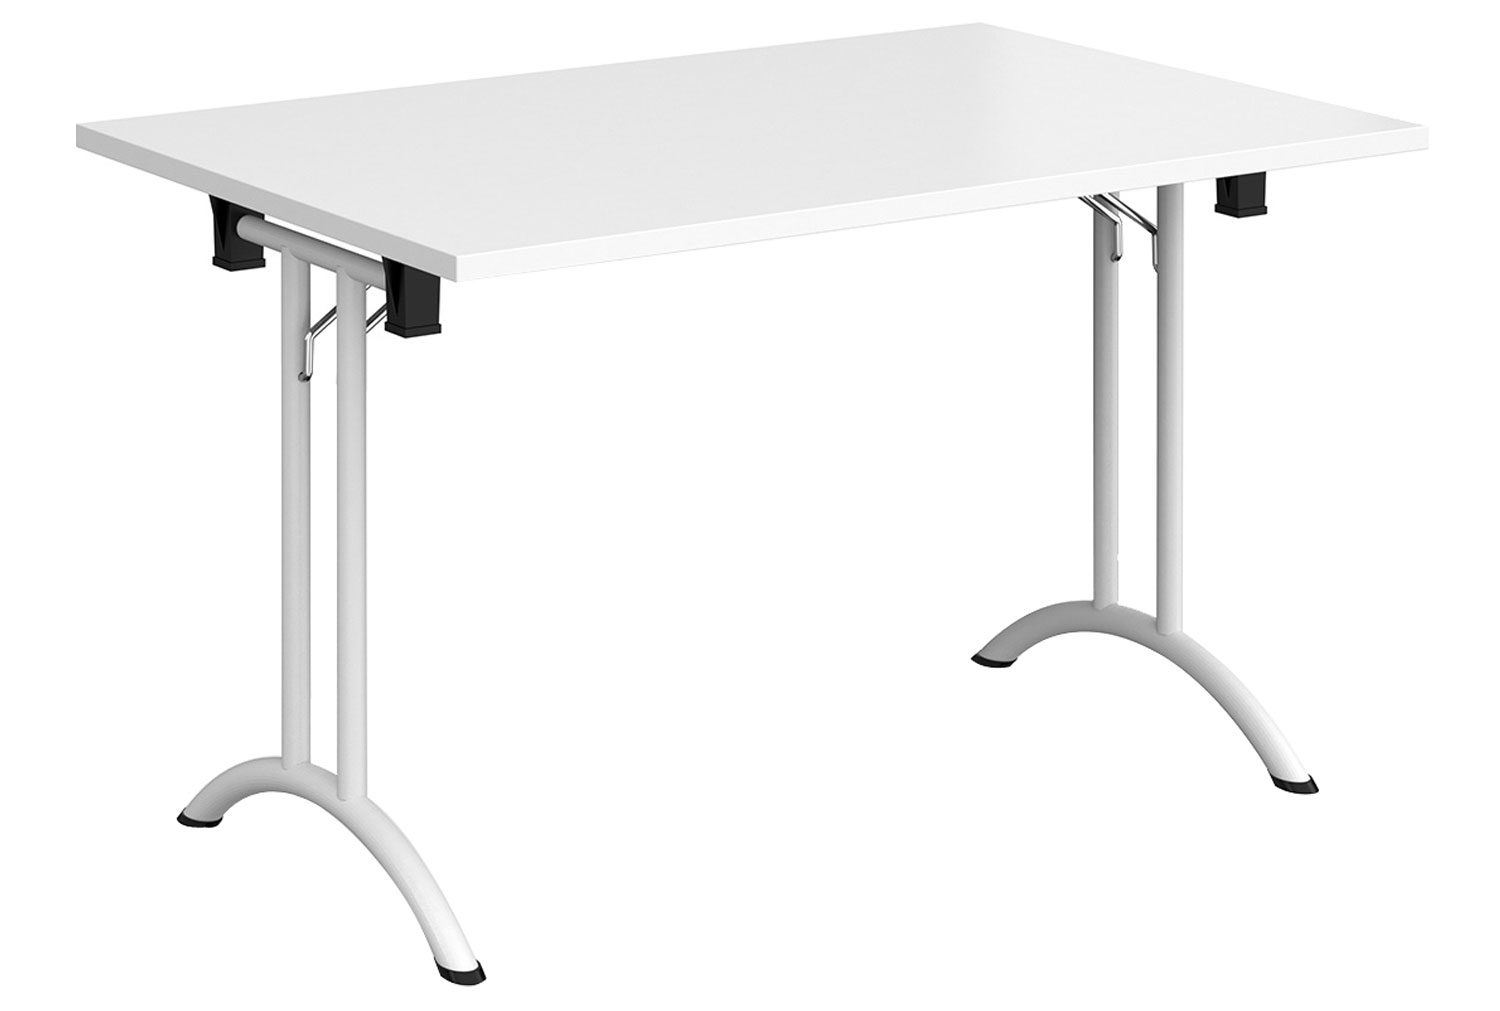 Zeeland Rectangular Folding Table, 120wx80dx73h (cm), White Frame, White